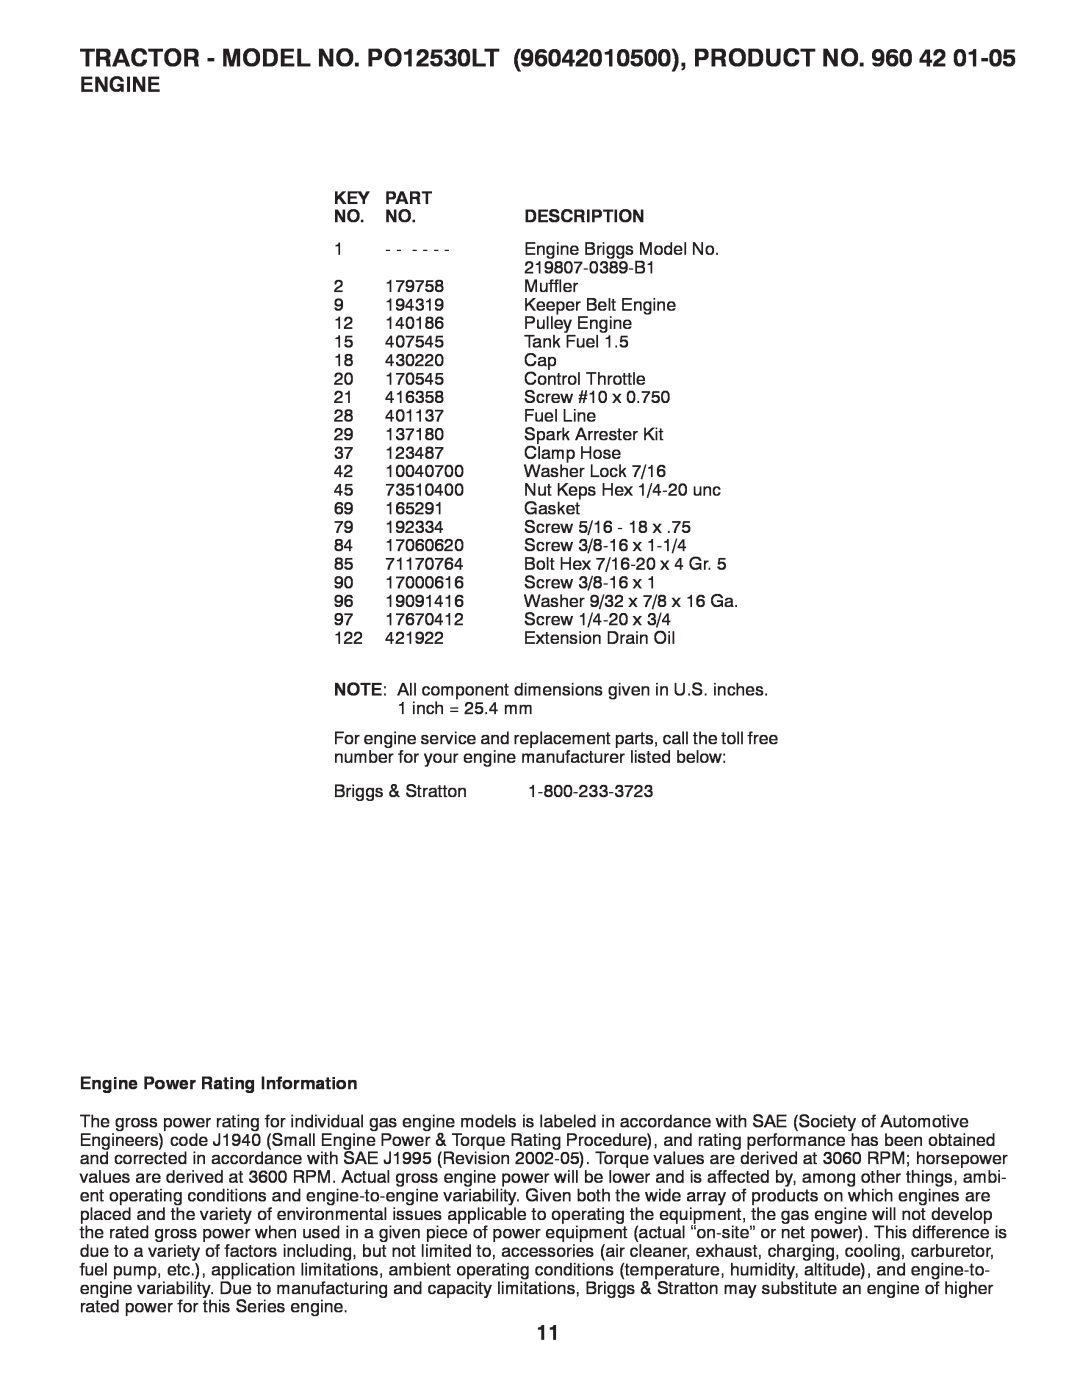 Poulan PO12530LT manual Engine Power Rating Information, Part, Description 